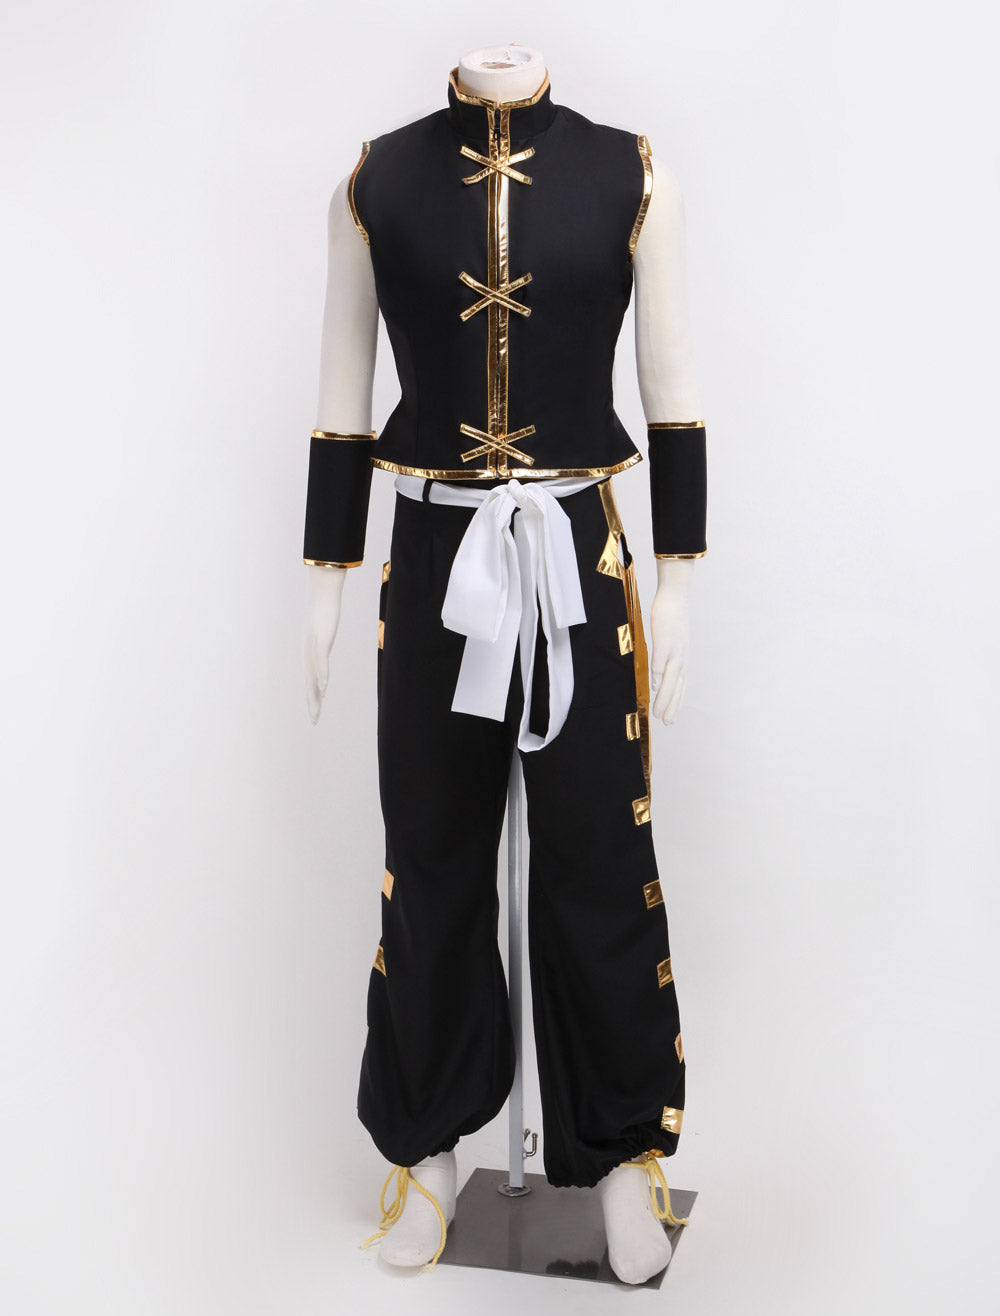 Shaman King 2021 Tao Ren Cosplay Costume